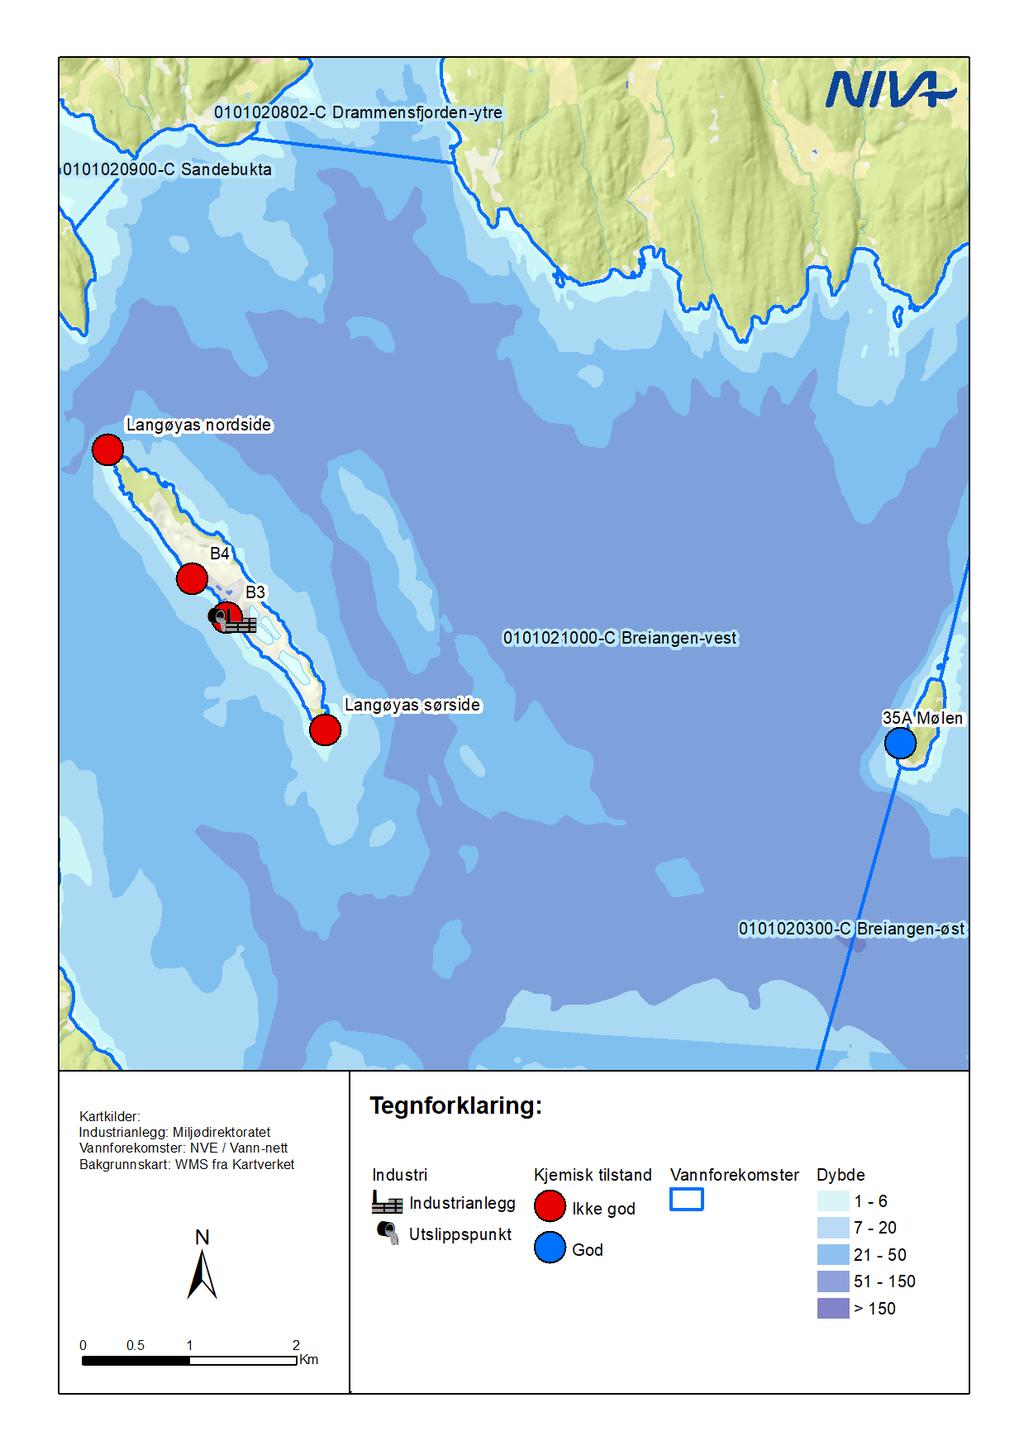 En oppsummering av kjemisk tilstand for blåskjell og torsk er vist i Figur 7. Det var «ikke god kjemisk tilstand» for blåskjellstasjonene B3 og B4 på Langøya og torsk fra Langøyas nordside og sørside.